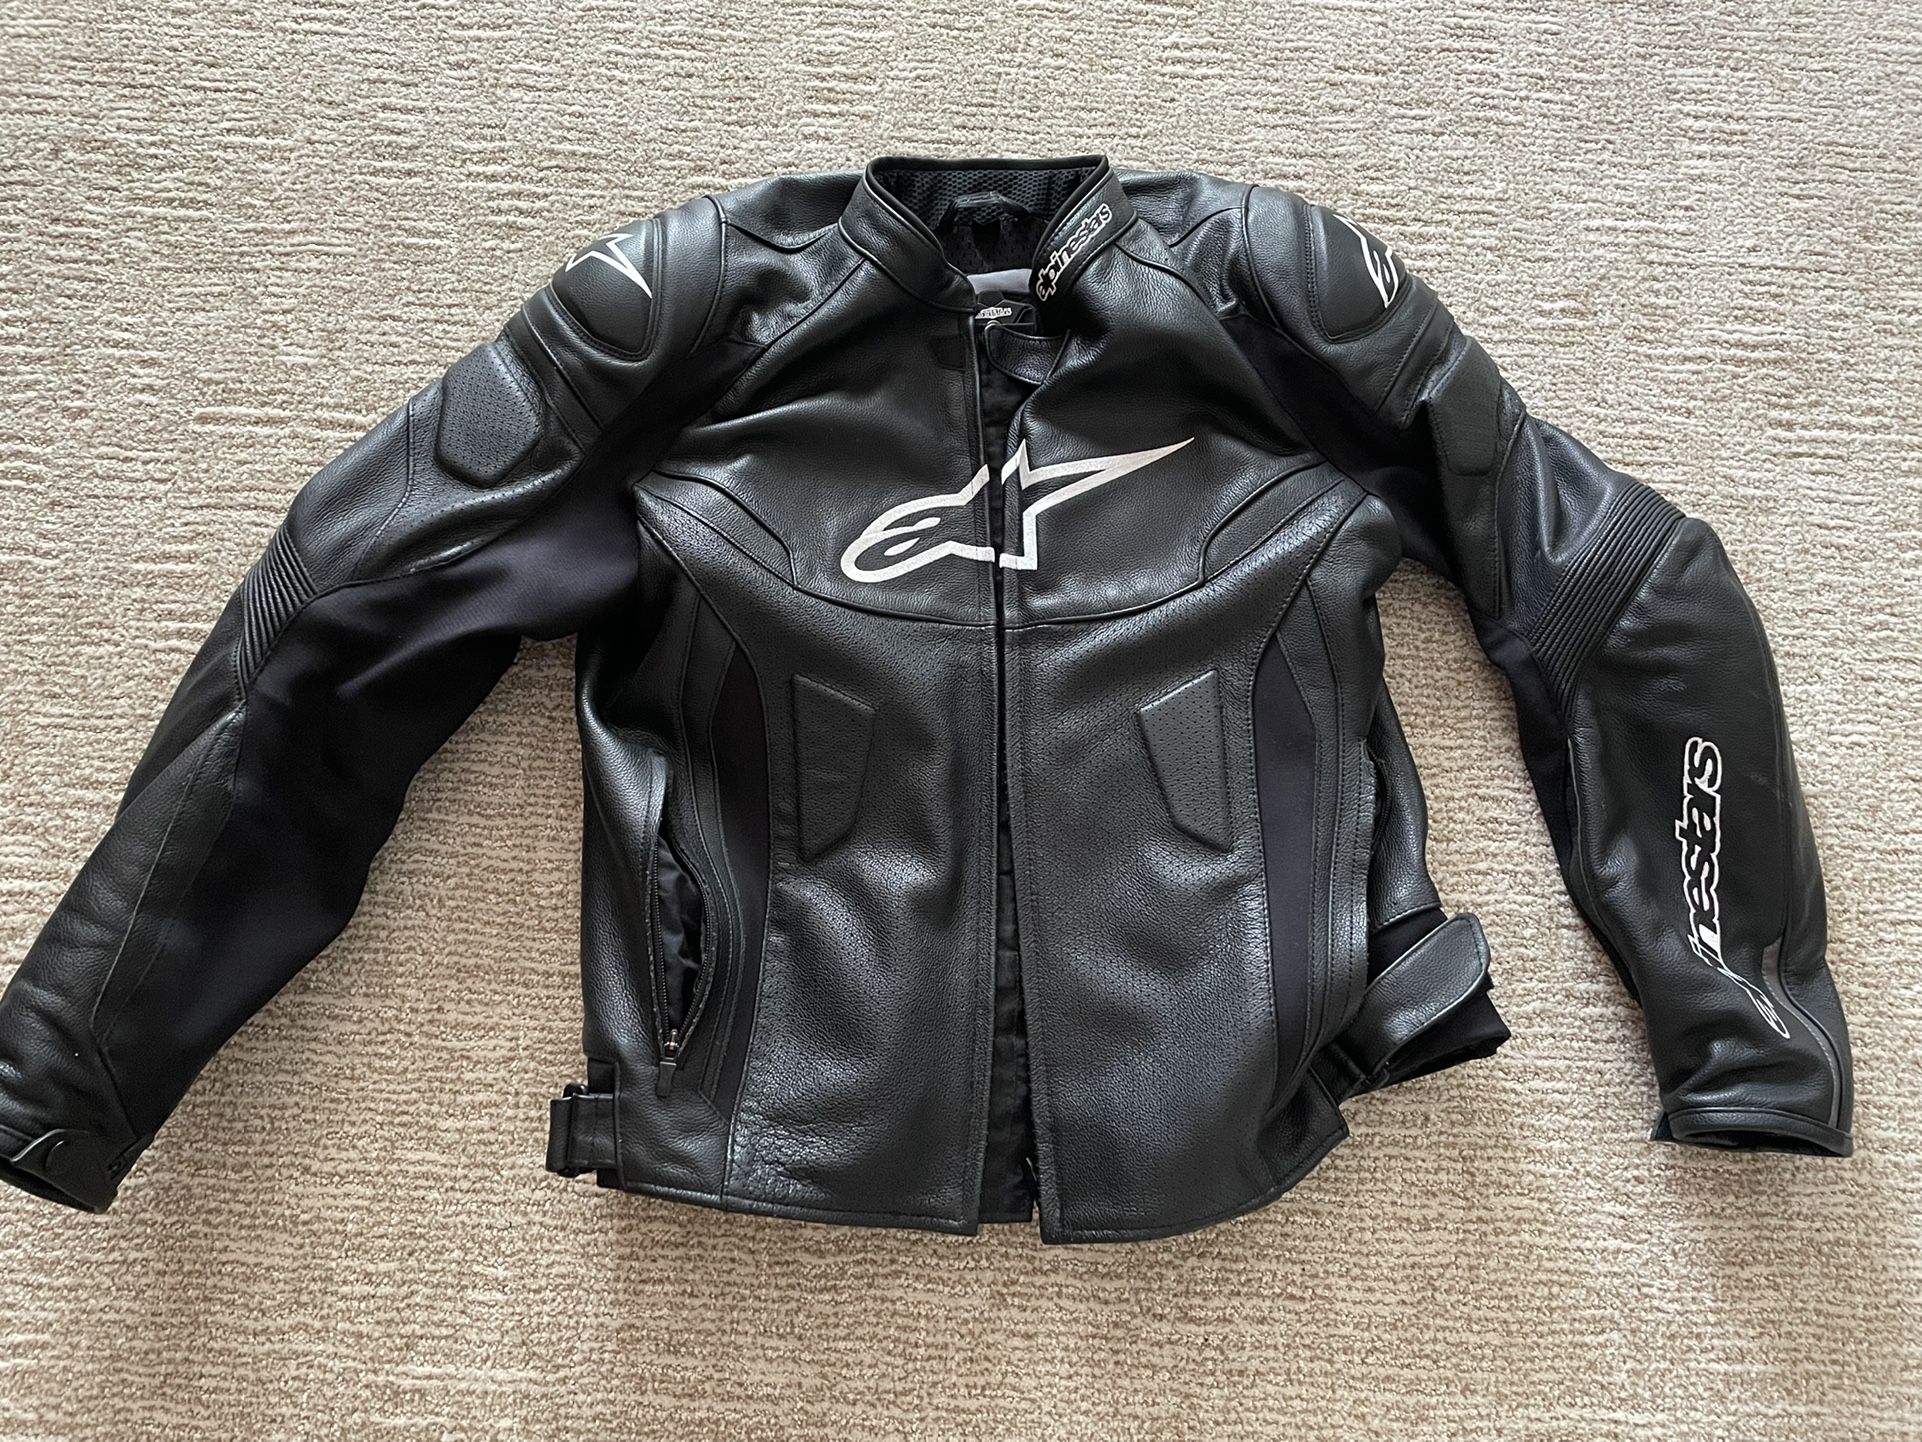 Alplinestars Motorcycle Jacket Size 50